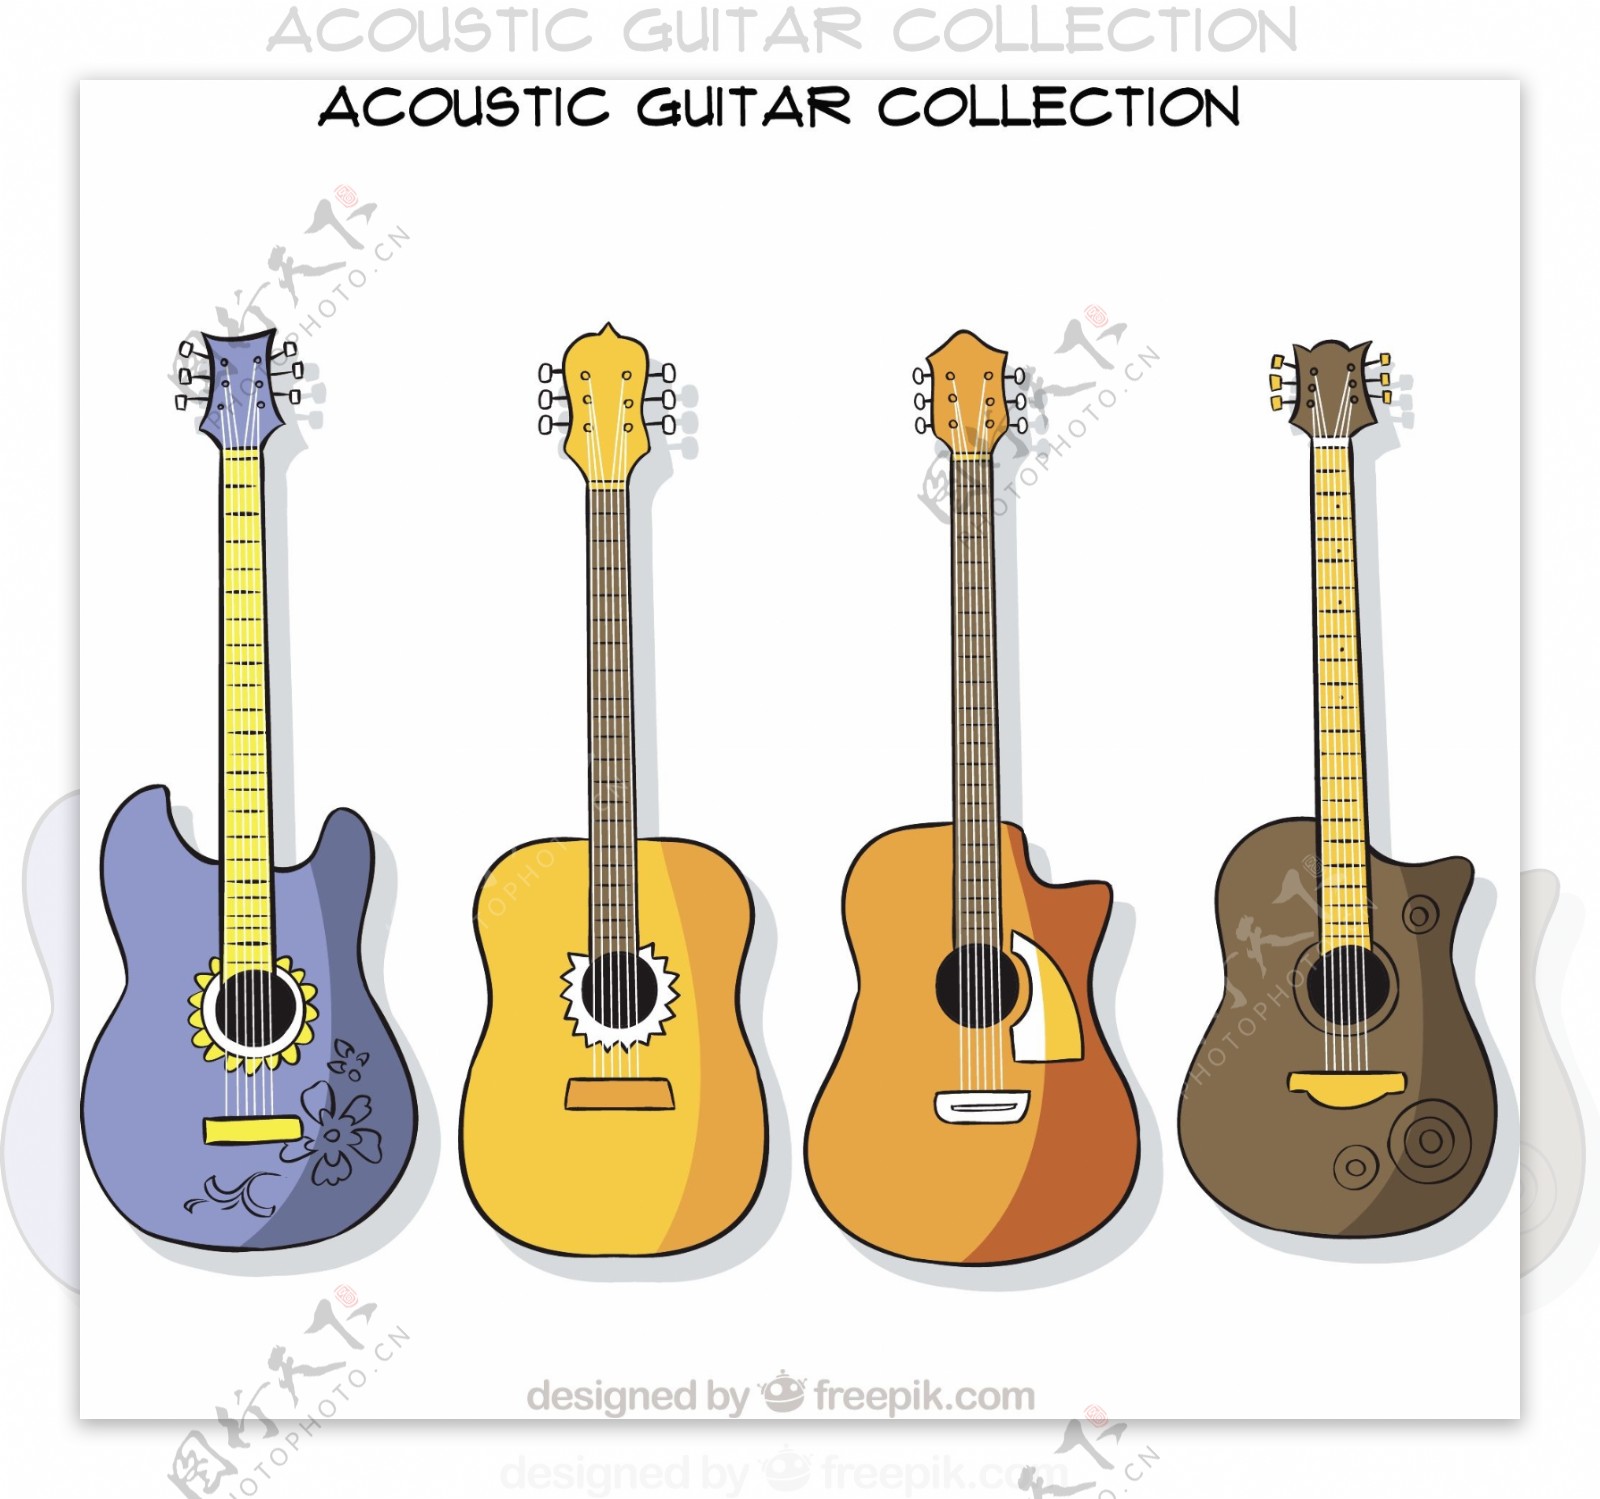 不同设计的四吉他收藏